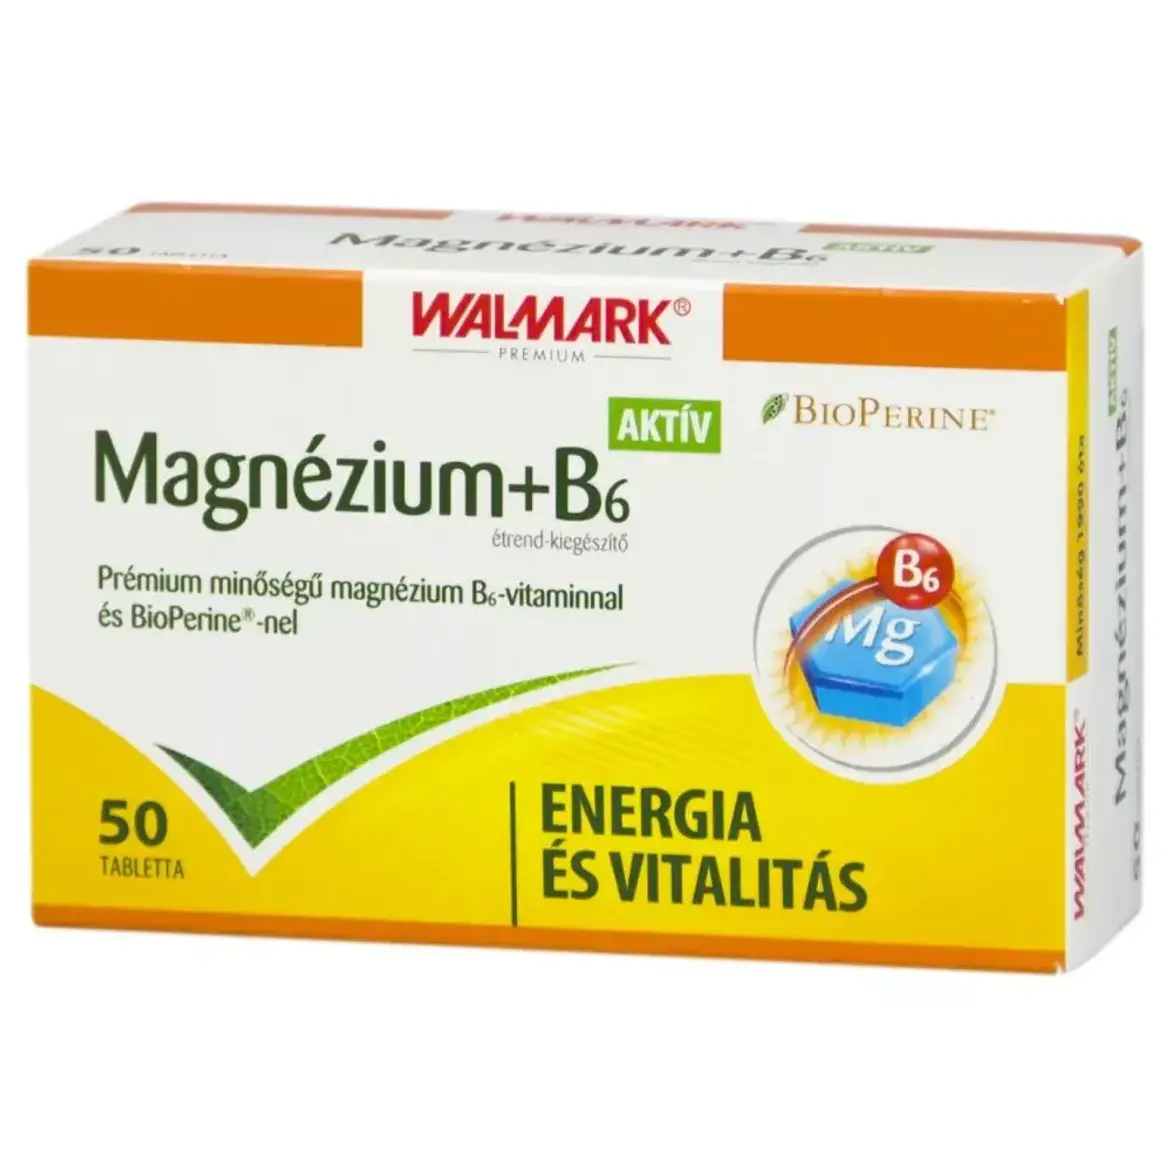 Walmark Magnézium +B6 aktív tabletta